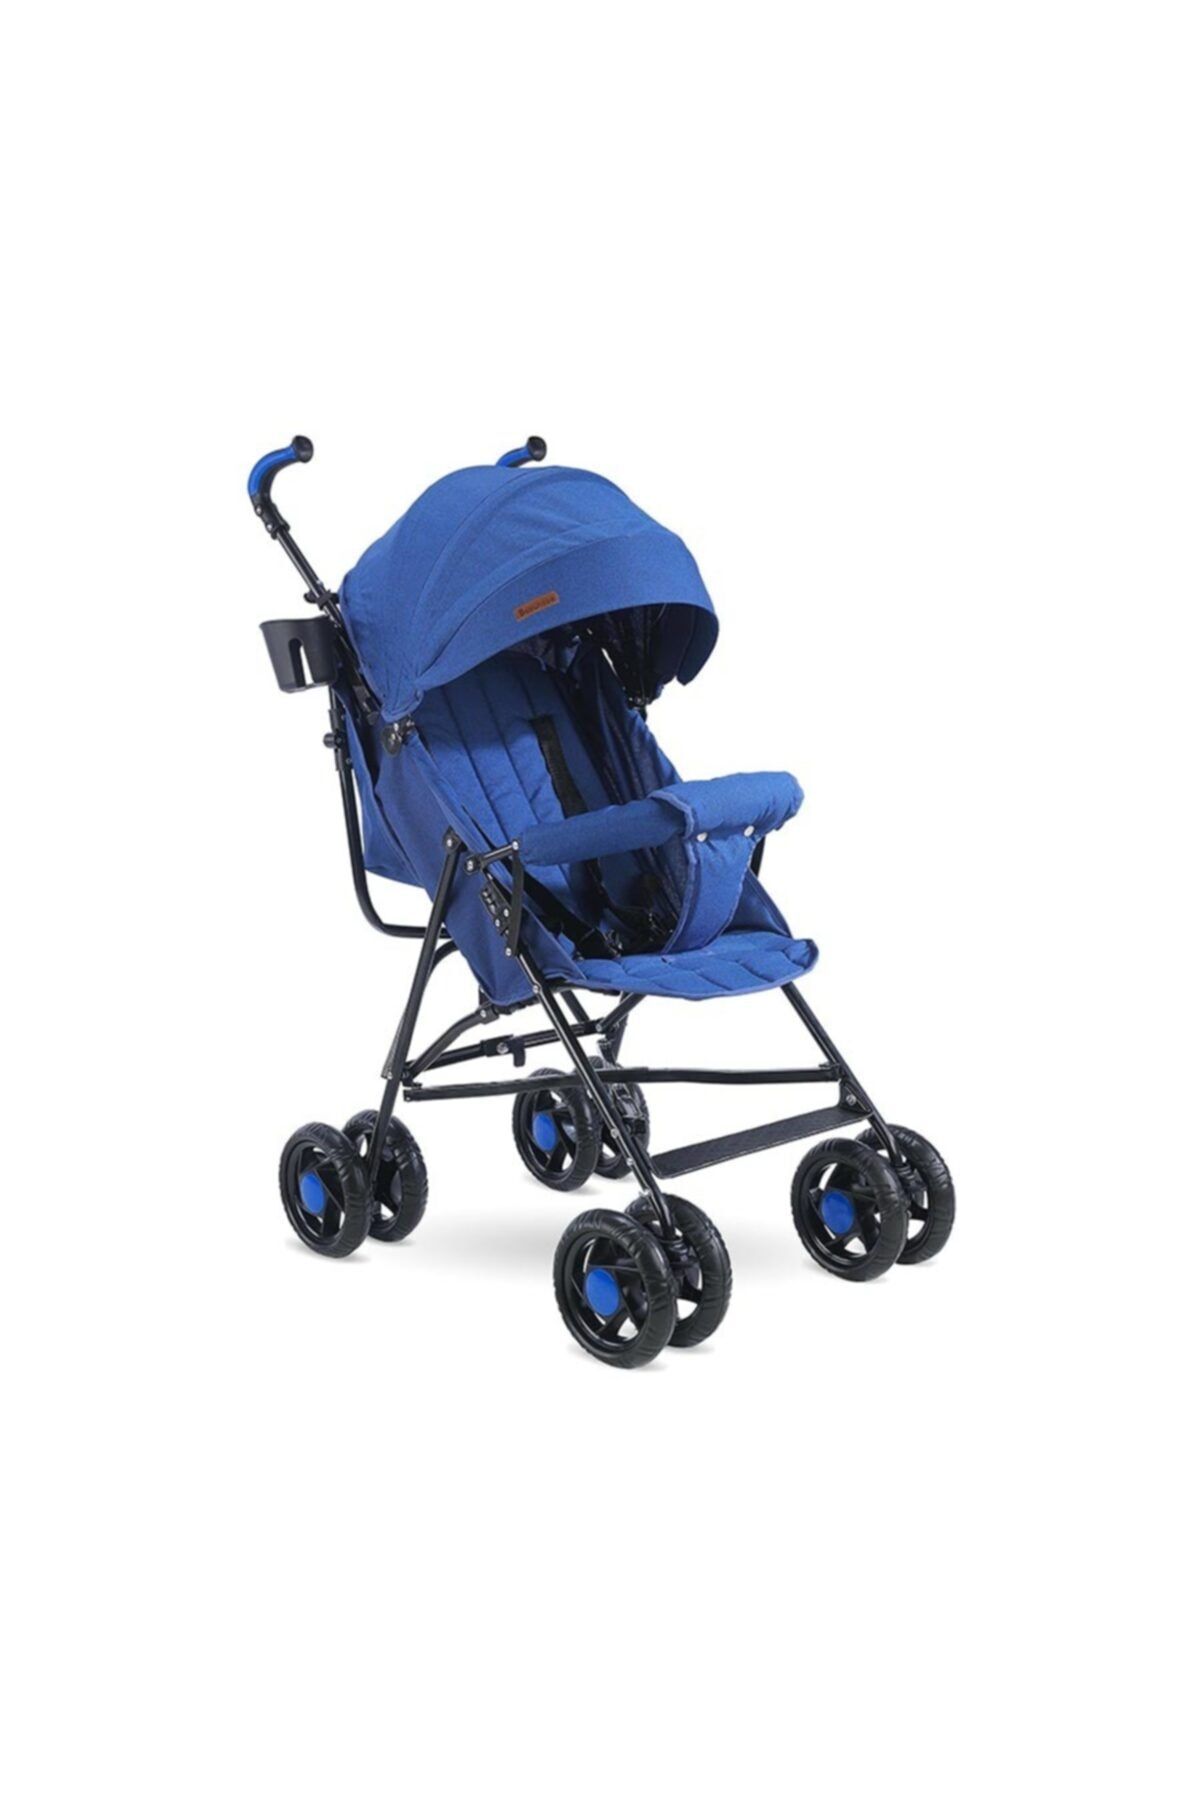 Babyhope Sc-100 Baston Bebek Arabası Mavi /